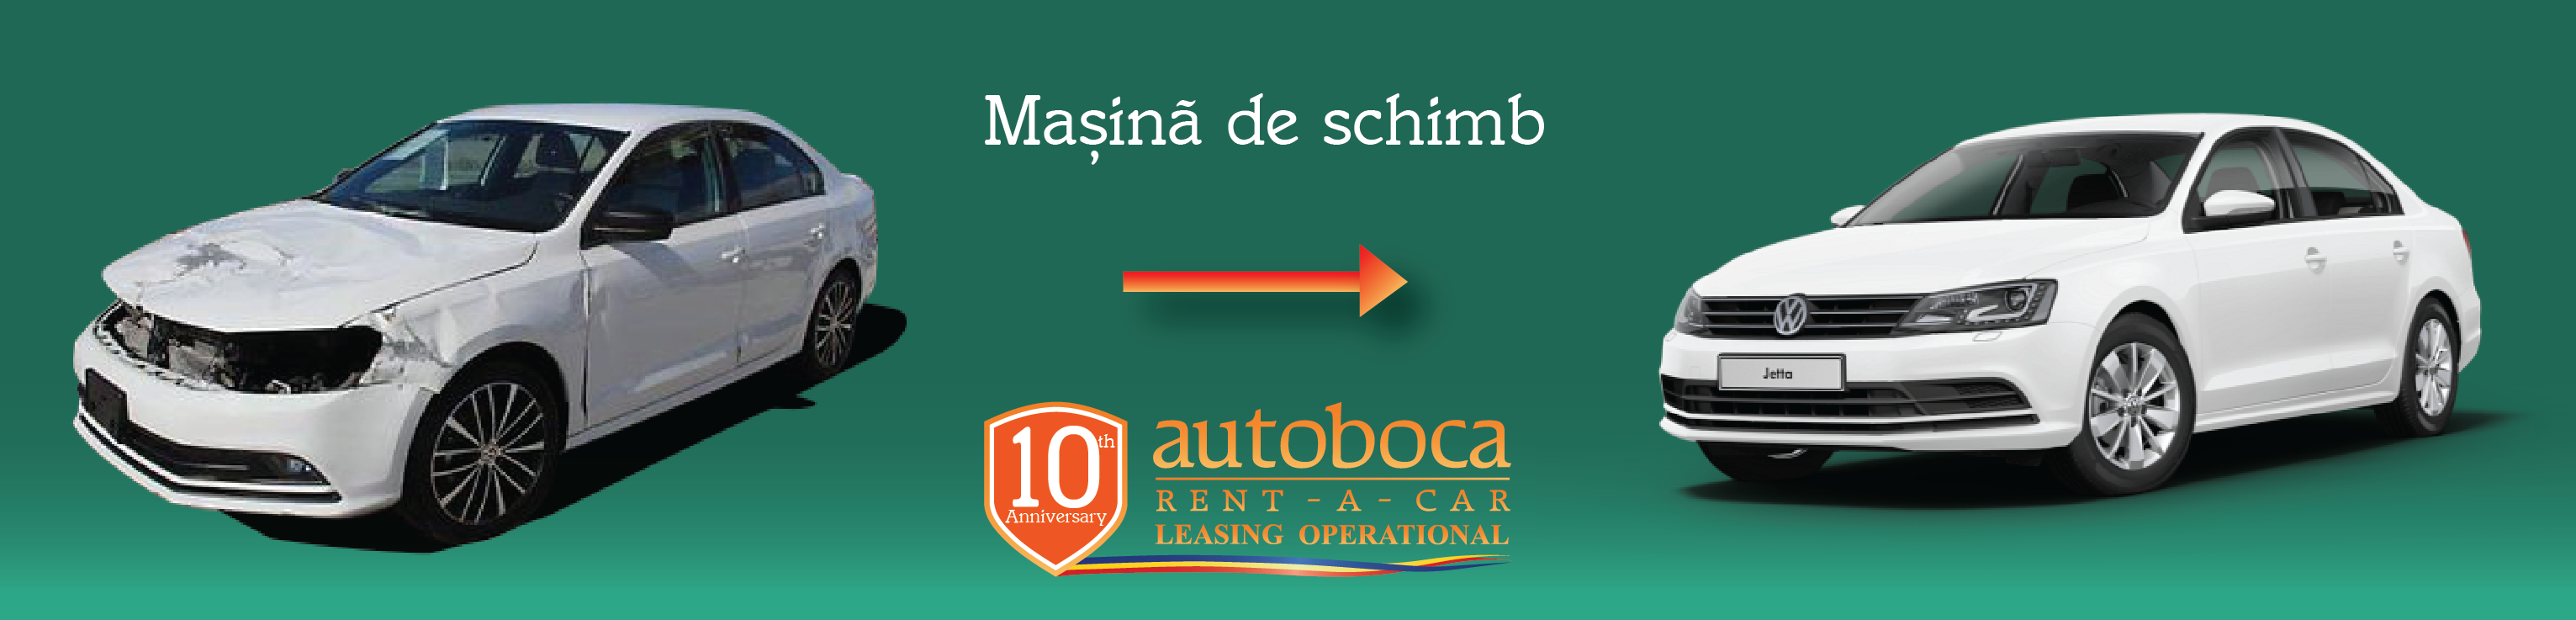 masina_la_schimb_oferta_de_la_autoboca.png